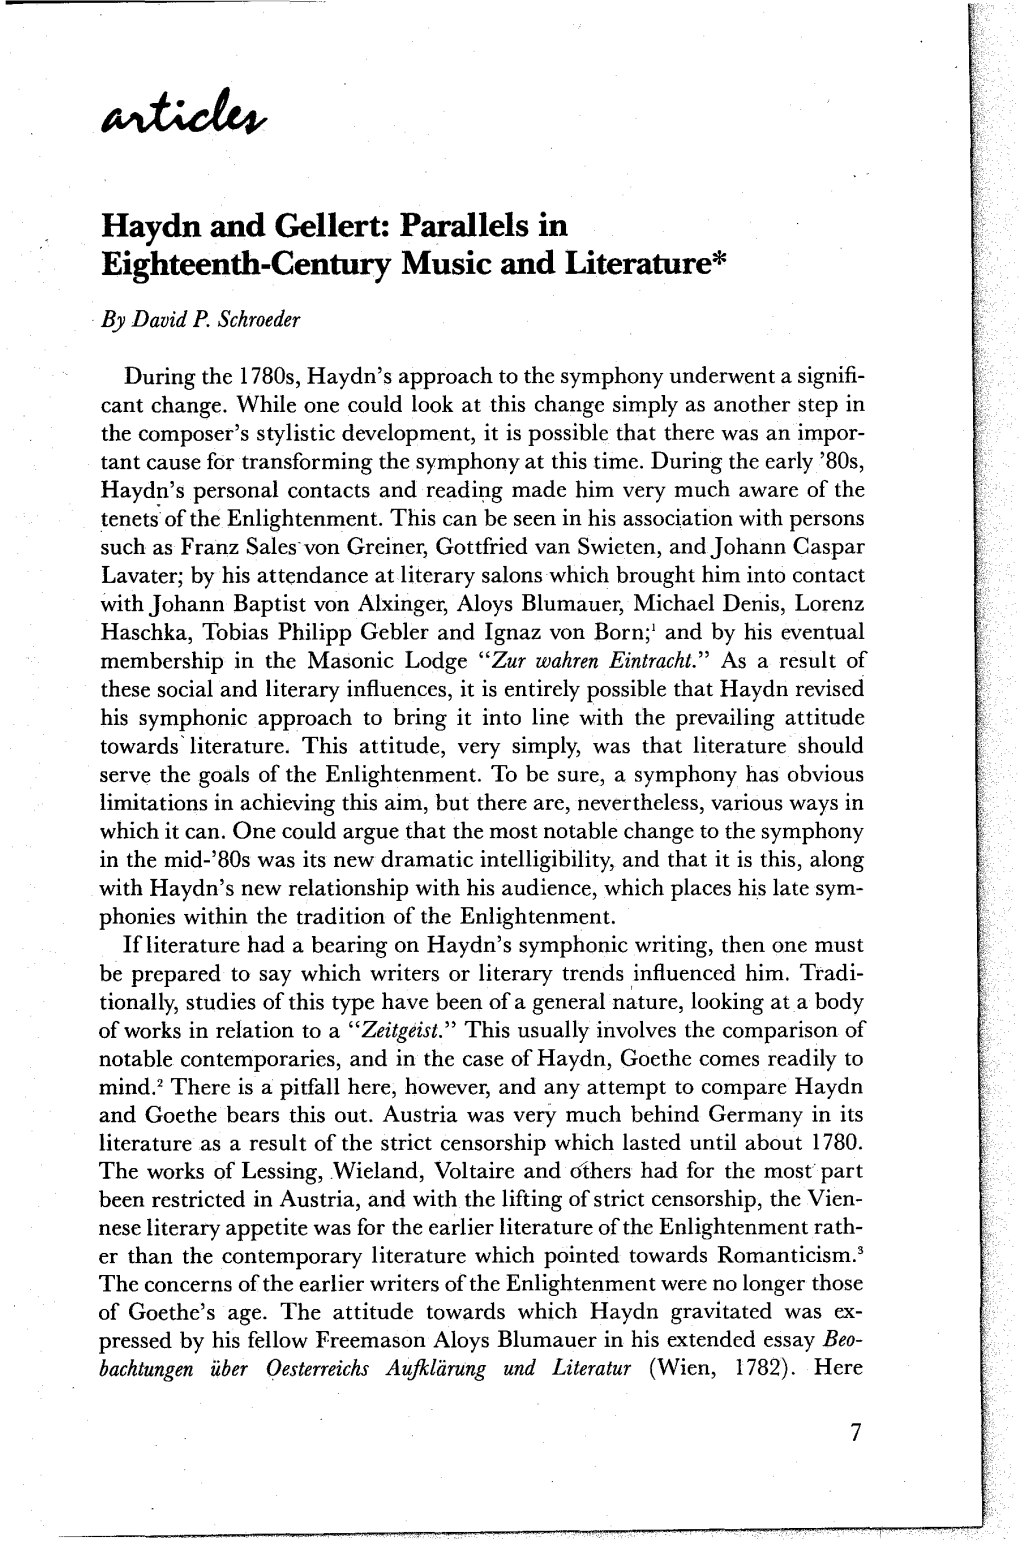 Haydn and Gellert: Parallels in Eighteenth-Century Music and Literature*